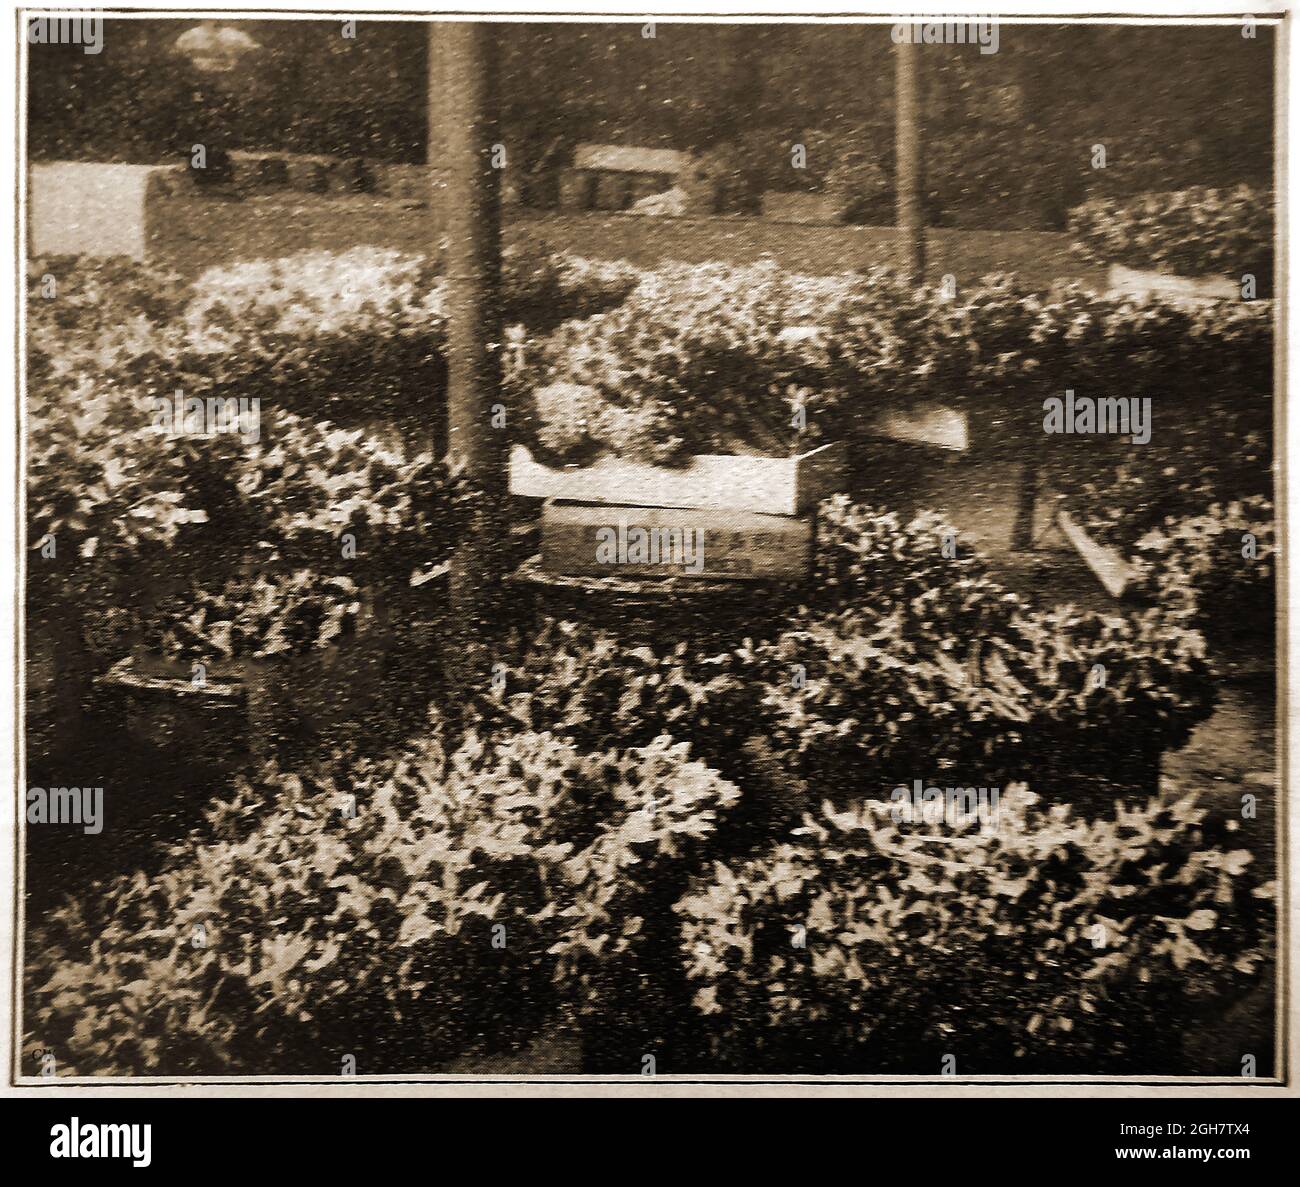 1914 - Kelly & Co, fornitori di fiori, Isole Scilly, Regno Unito. Una foto stampa del tempo che mostra una selezione di fiori di daffodil prima stagione nella zona di imballaggio. Scilly ha un record di log nell'industria dei fiori per la fornitura di prime fioriture grazie al suo clima mite. Fu in i879 che un islander inviò una scatola di narcisi selvaggi al mercato del Giardino Convento. I compratori erano così impressionati con le prime fioriture che un'industria dei fiori ha cominciato immediatamente. Oggi è la seconda più grande industria delle isole (dopo il turismo) Foto Stock